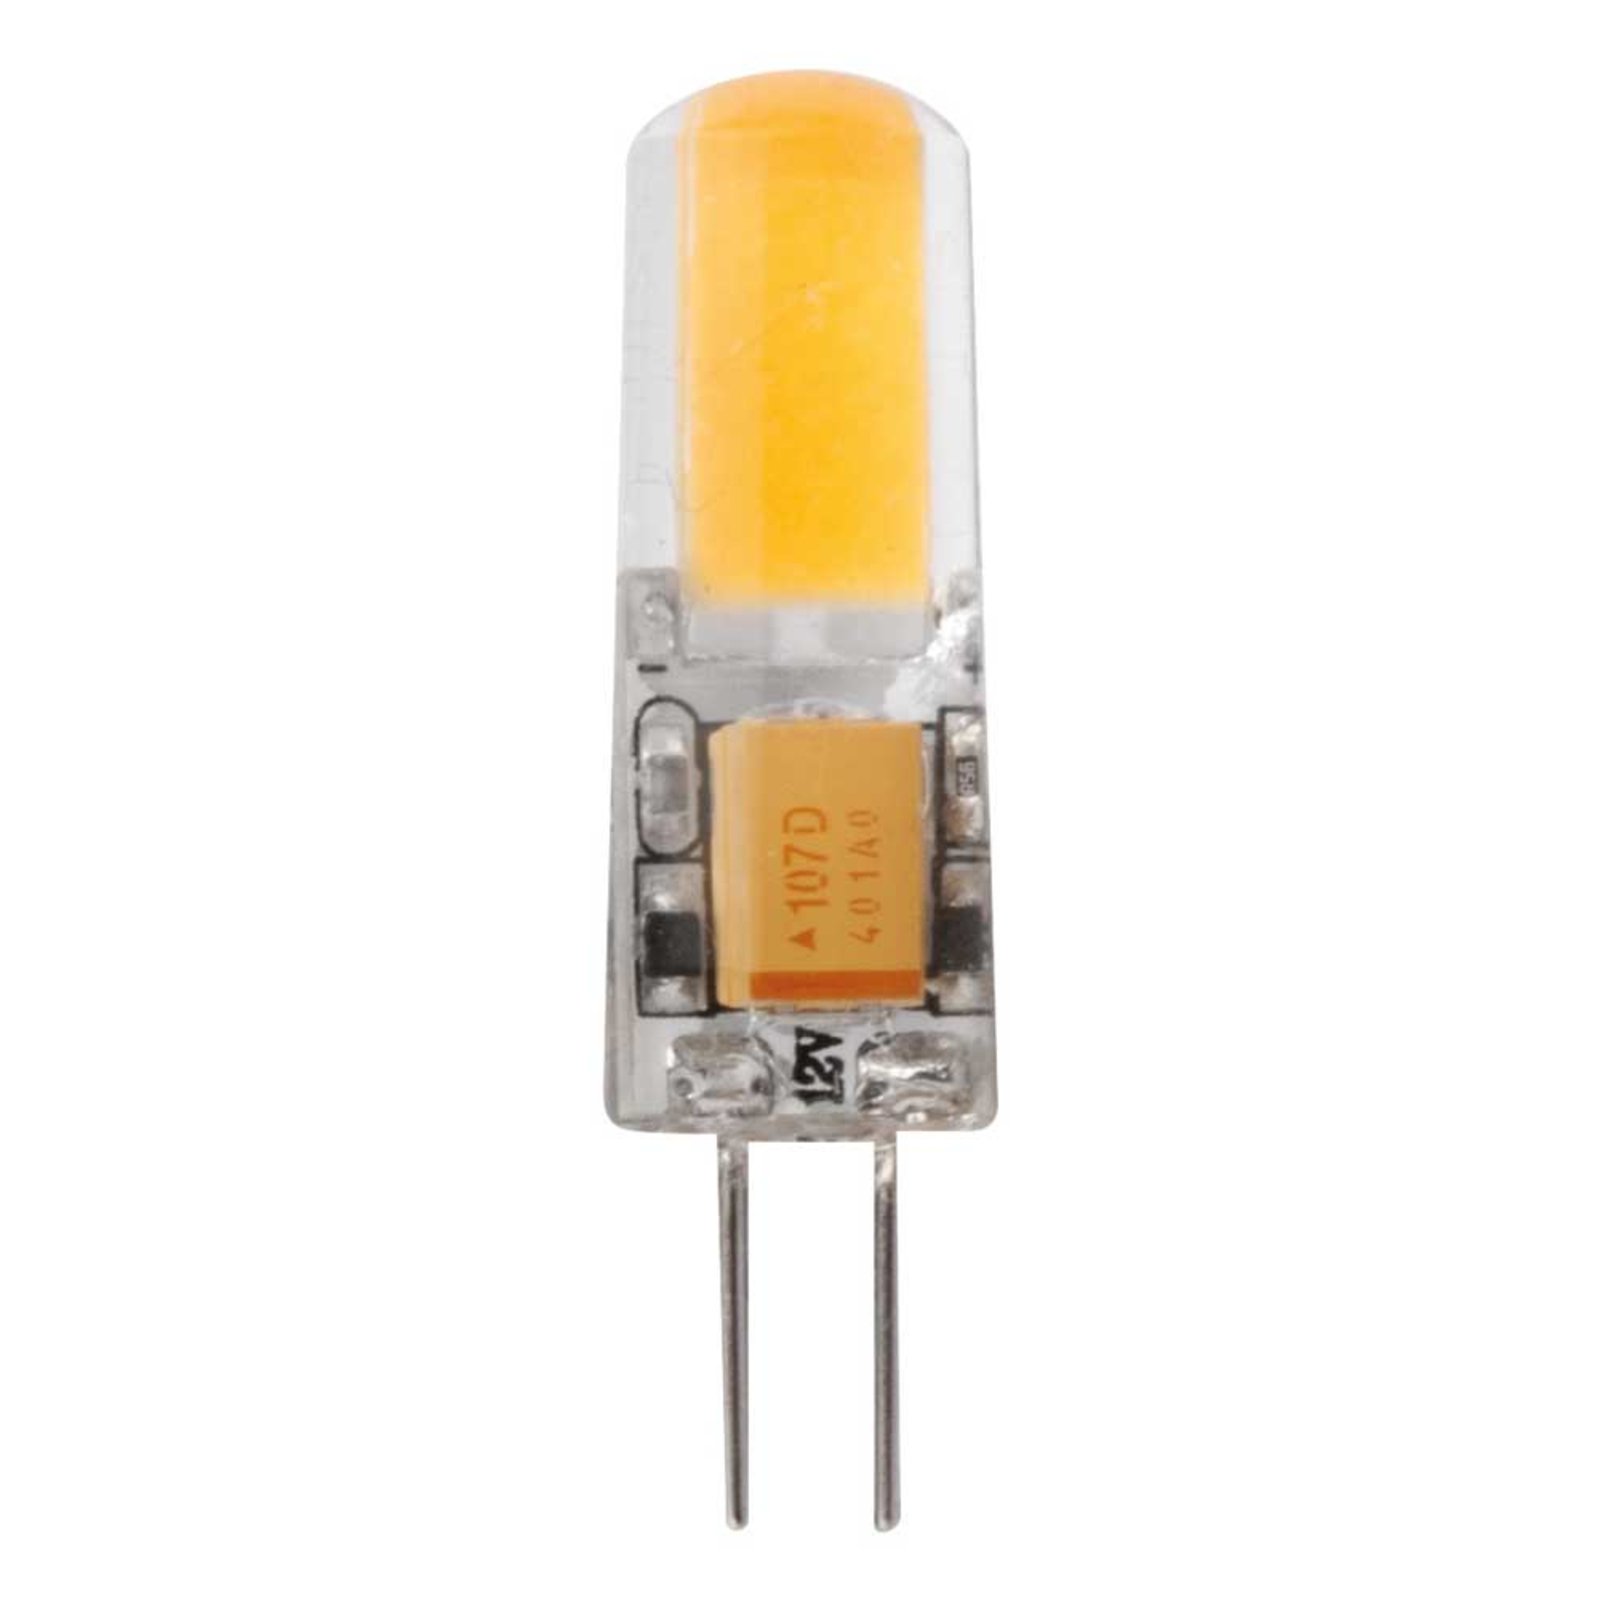 Λαμπτήρας LED με βάση καρφίτσας G4 1.8W ζεστό λευκό